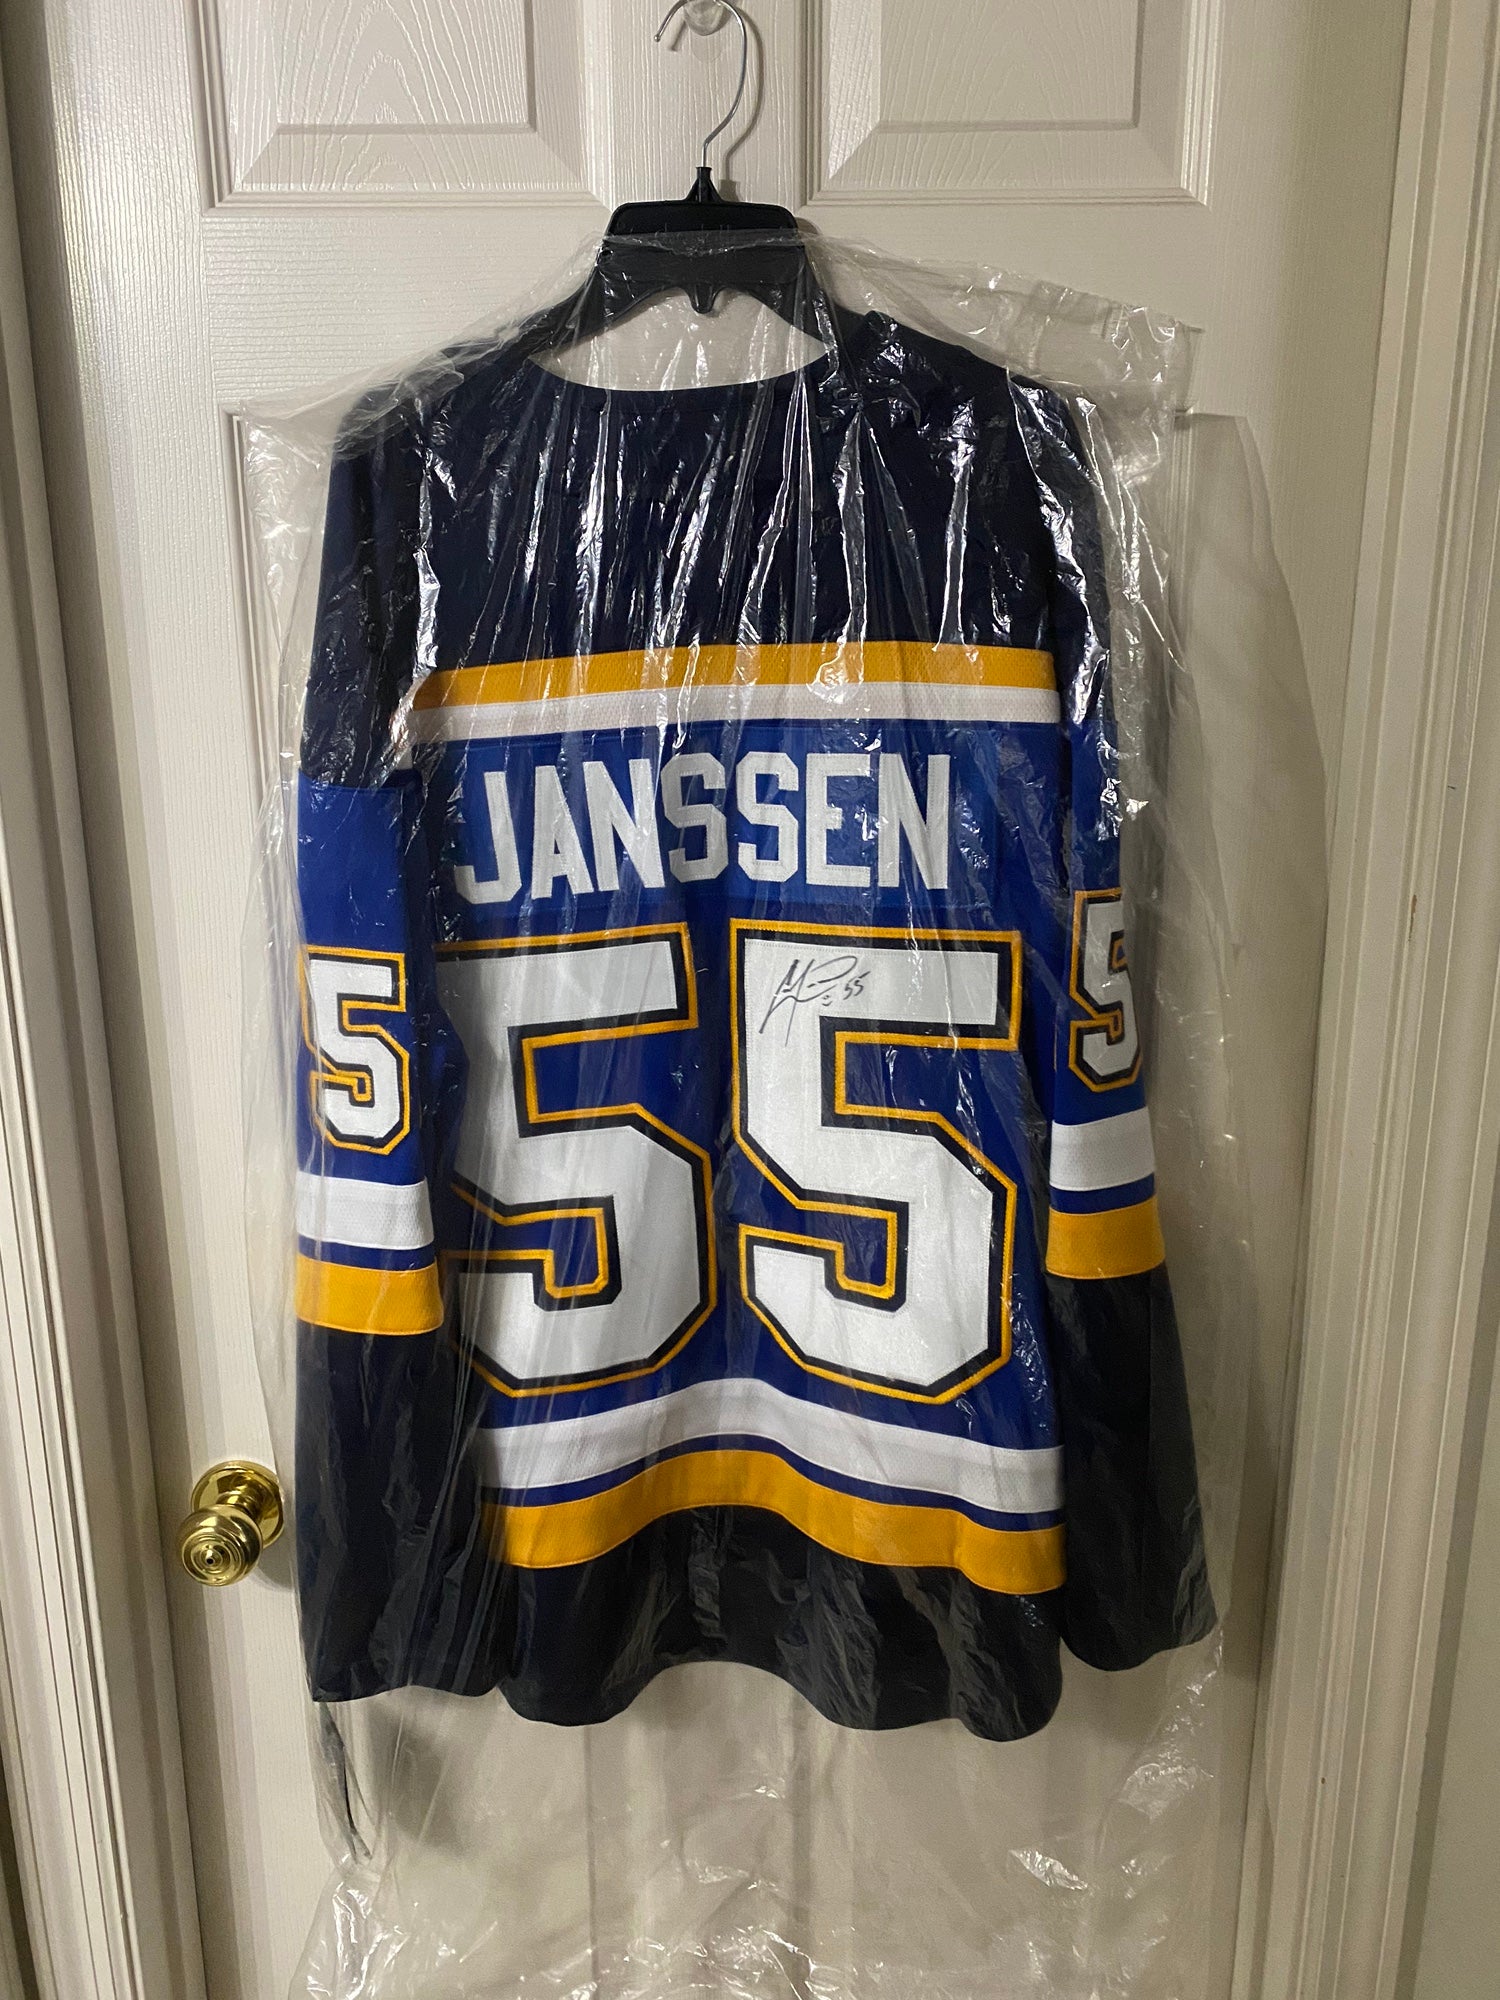 Jansen JJ replica jersey